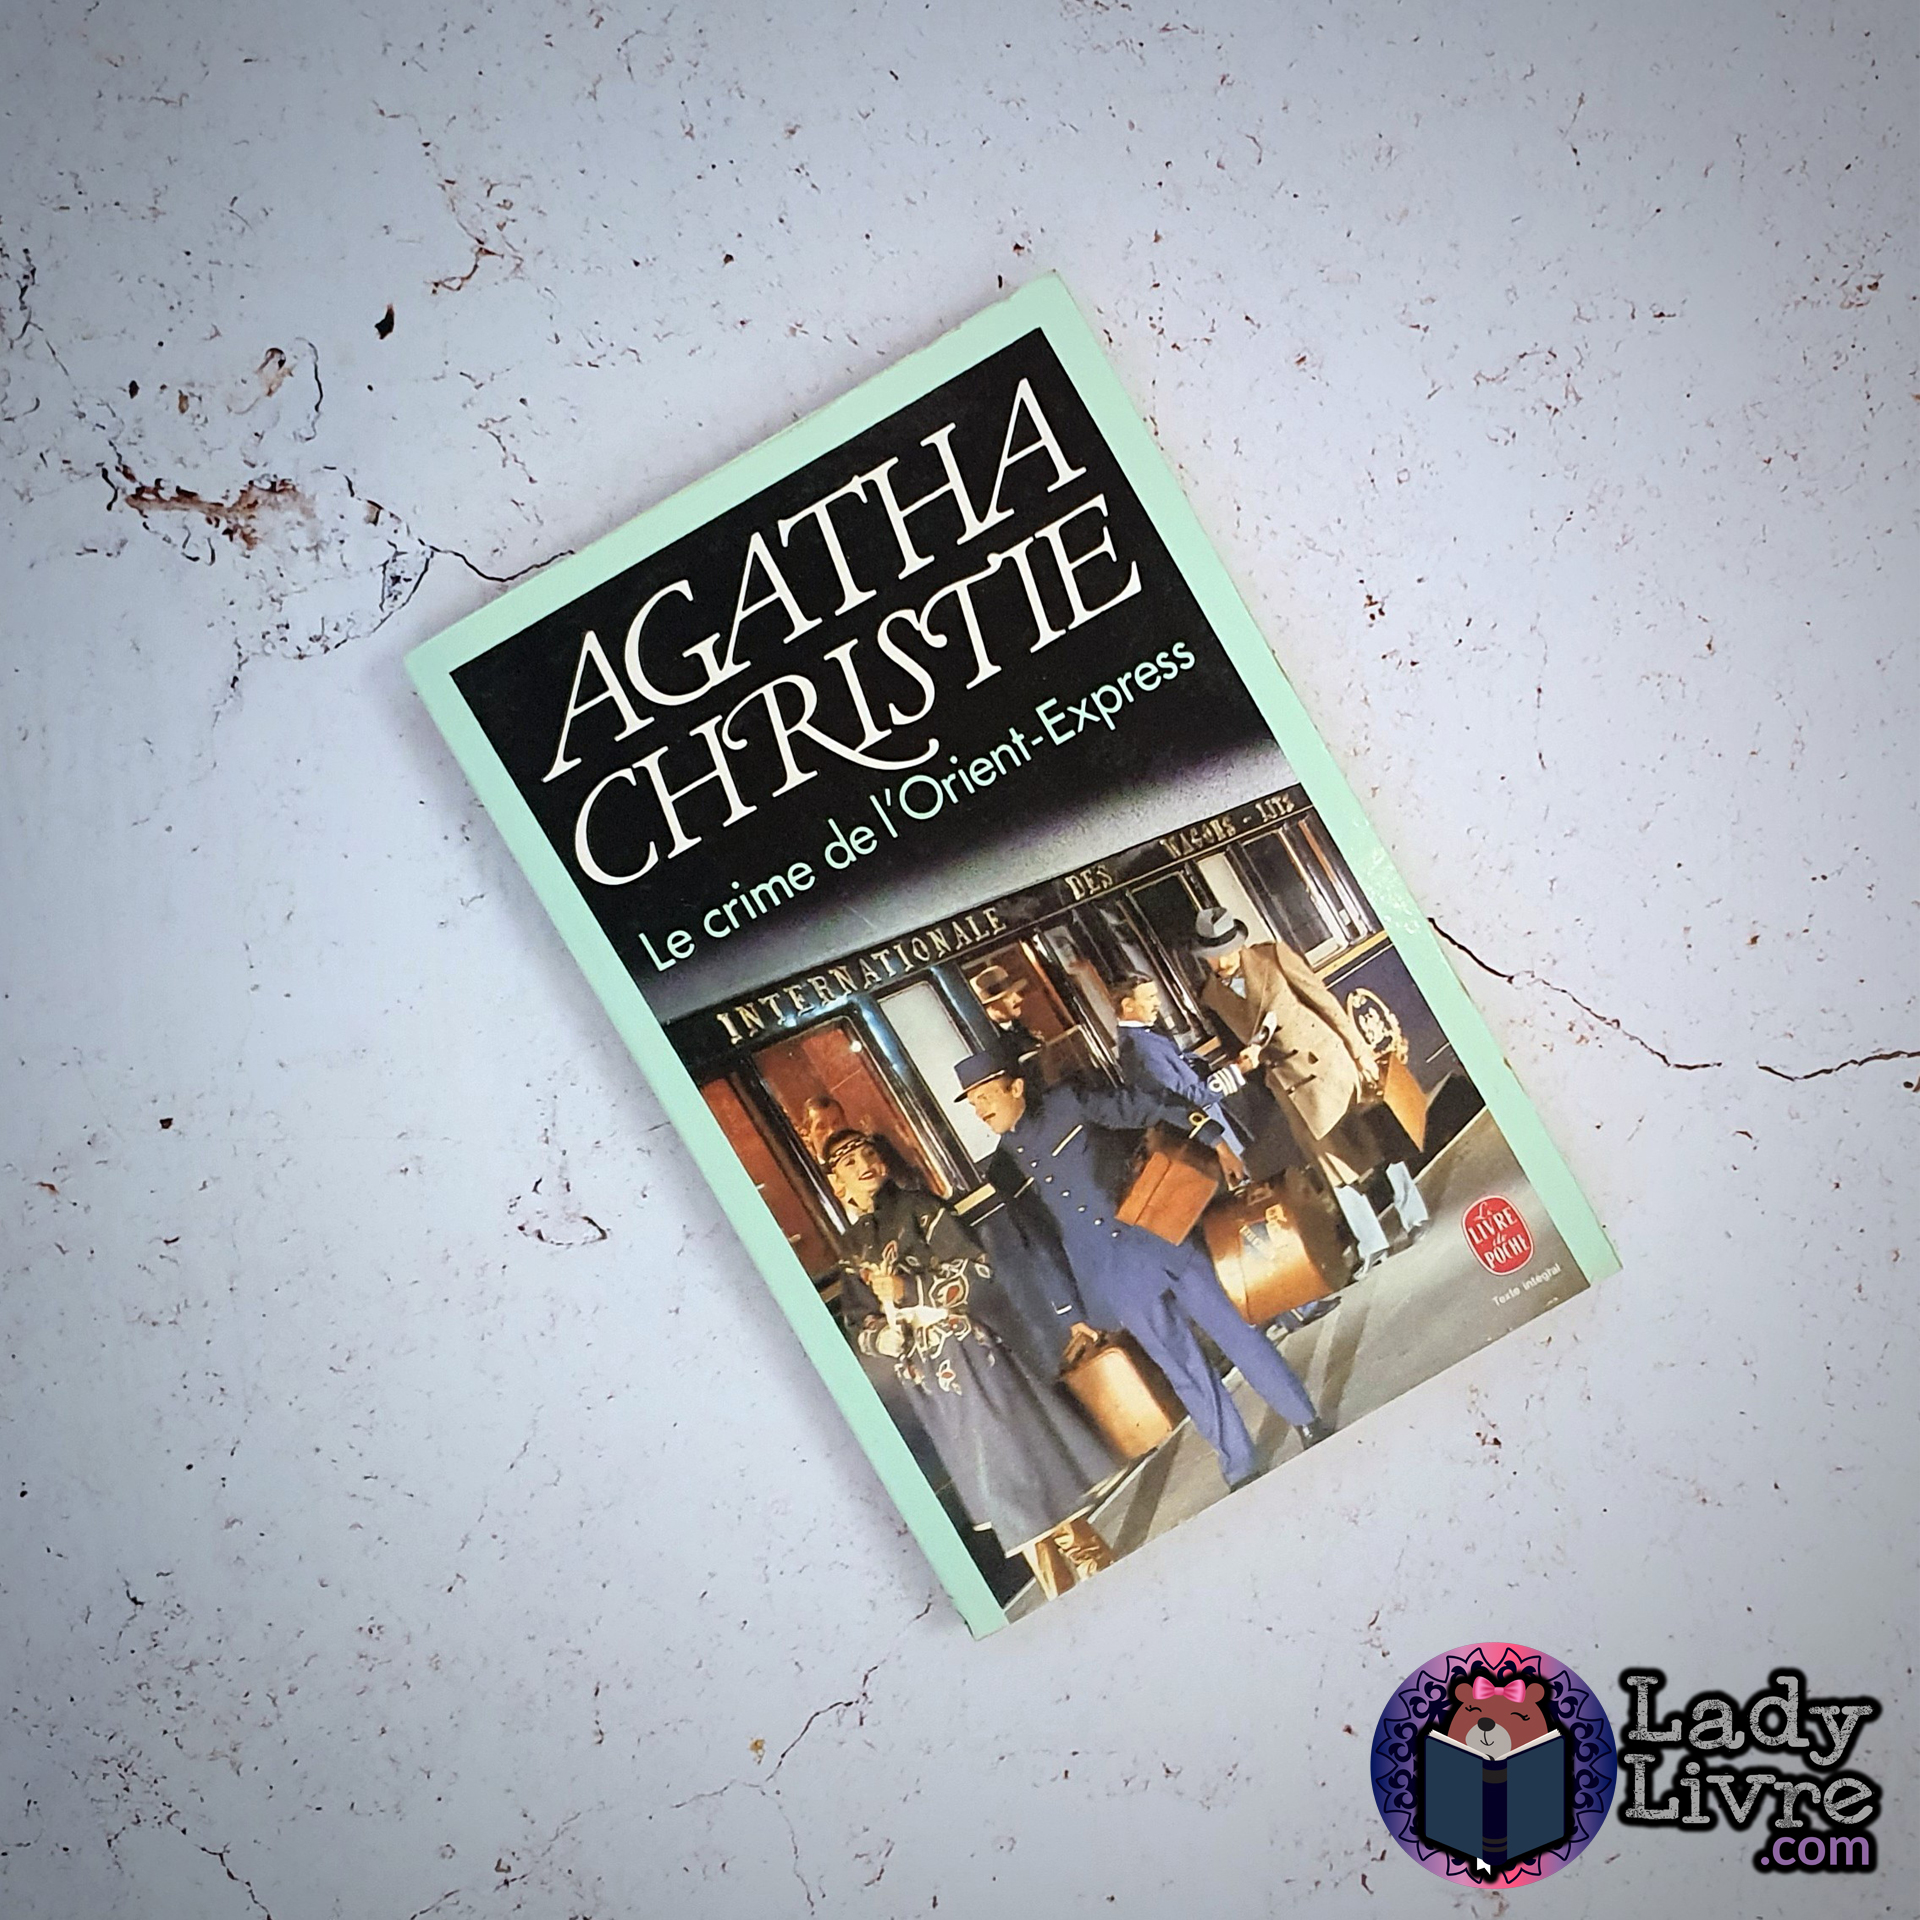 Le crime de l'Orient-Express - Agatha Christie